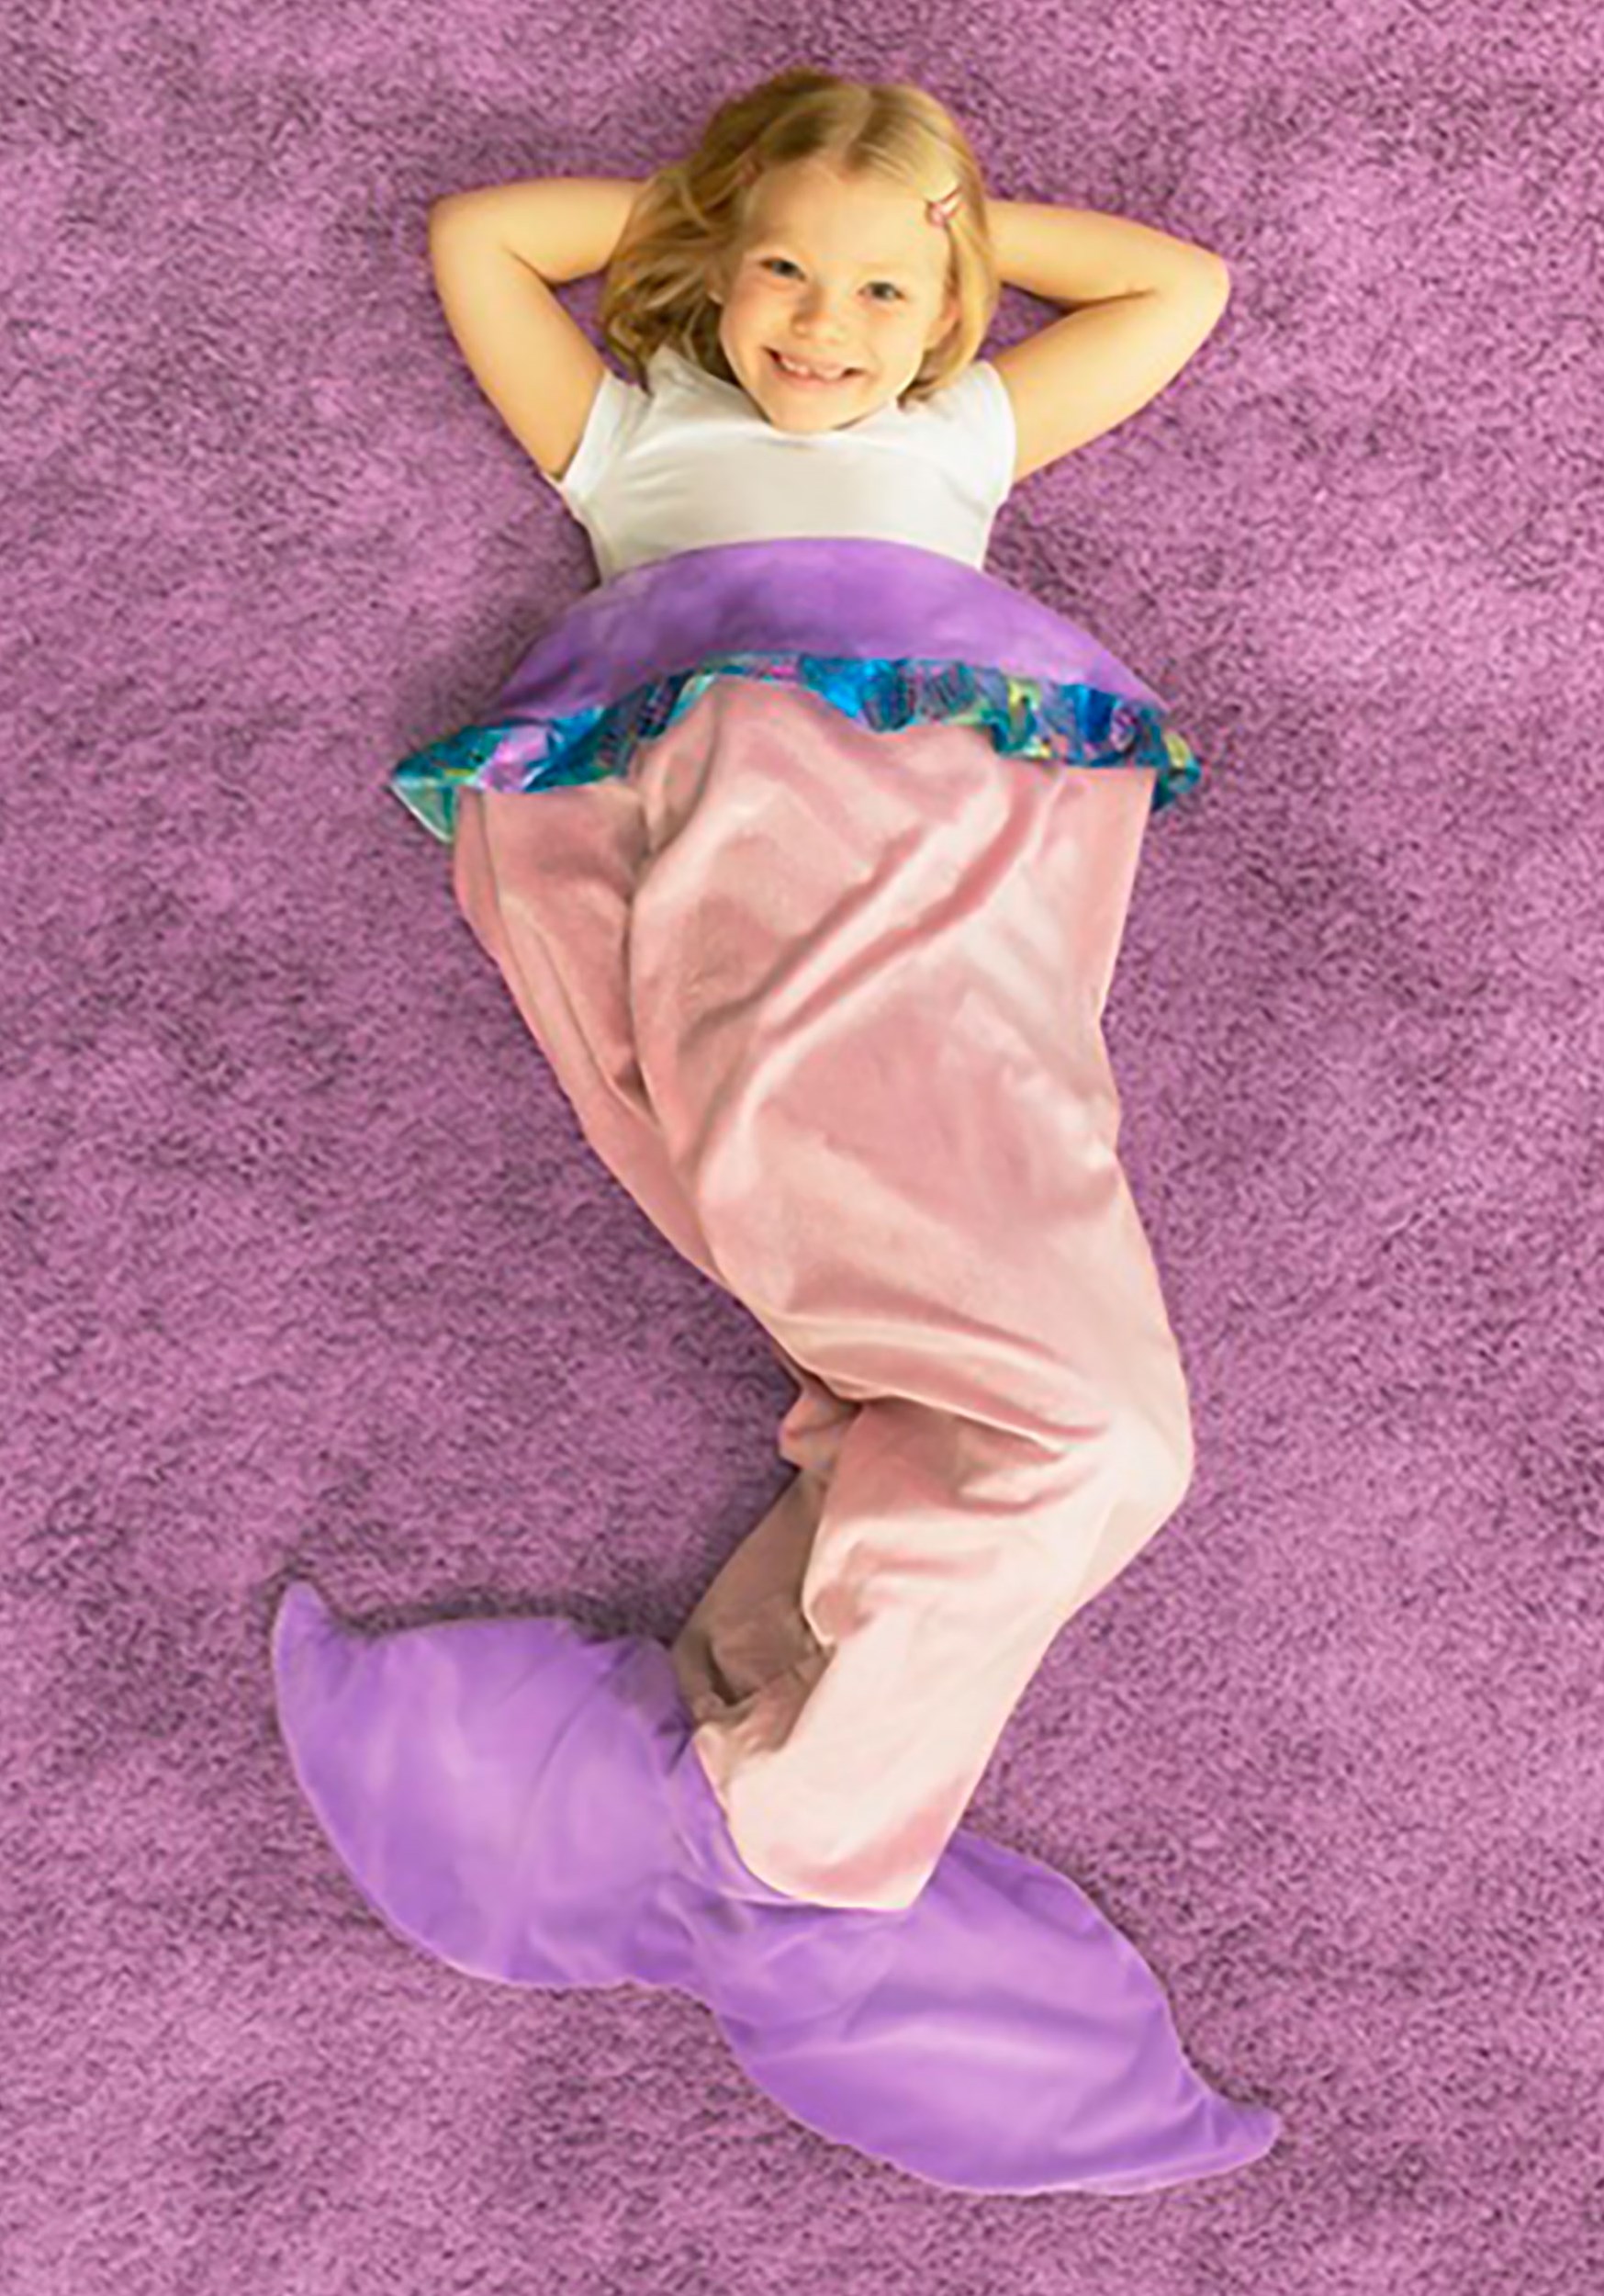 Kids Mermaid Tail Blanket